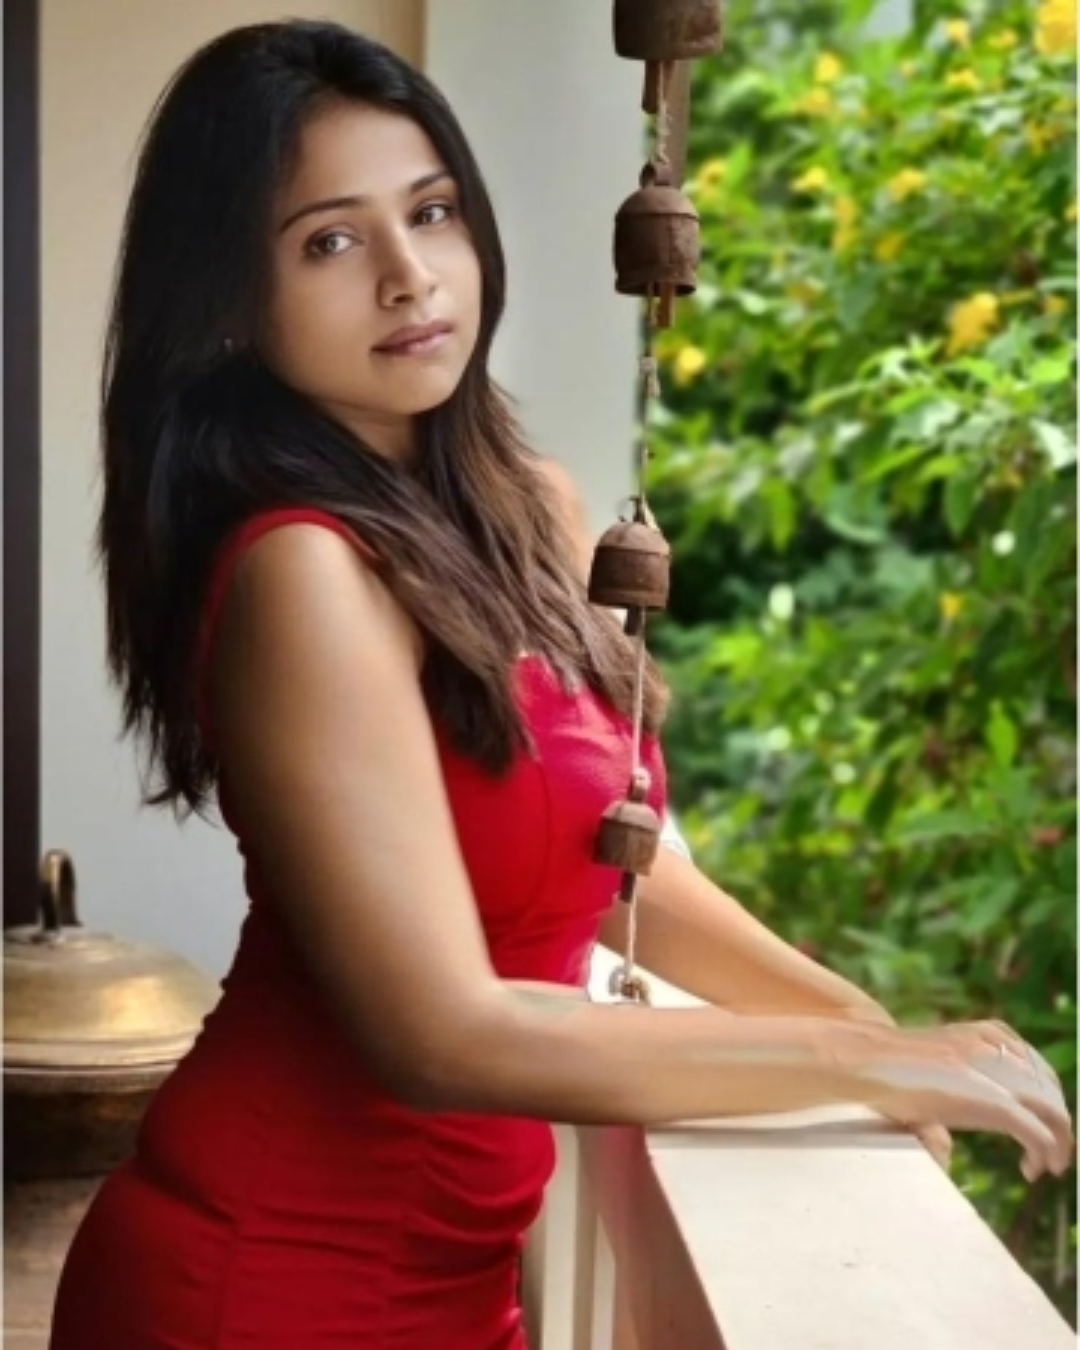 பகுதி - 3: சன் டிவி நடிகைகளின் உண்மையான பெயர், சம்பளம் குறித்த முழு விபரம்.. | Sun TV Tamil Serial Actress Name List